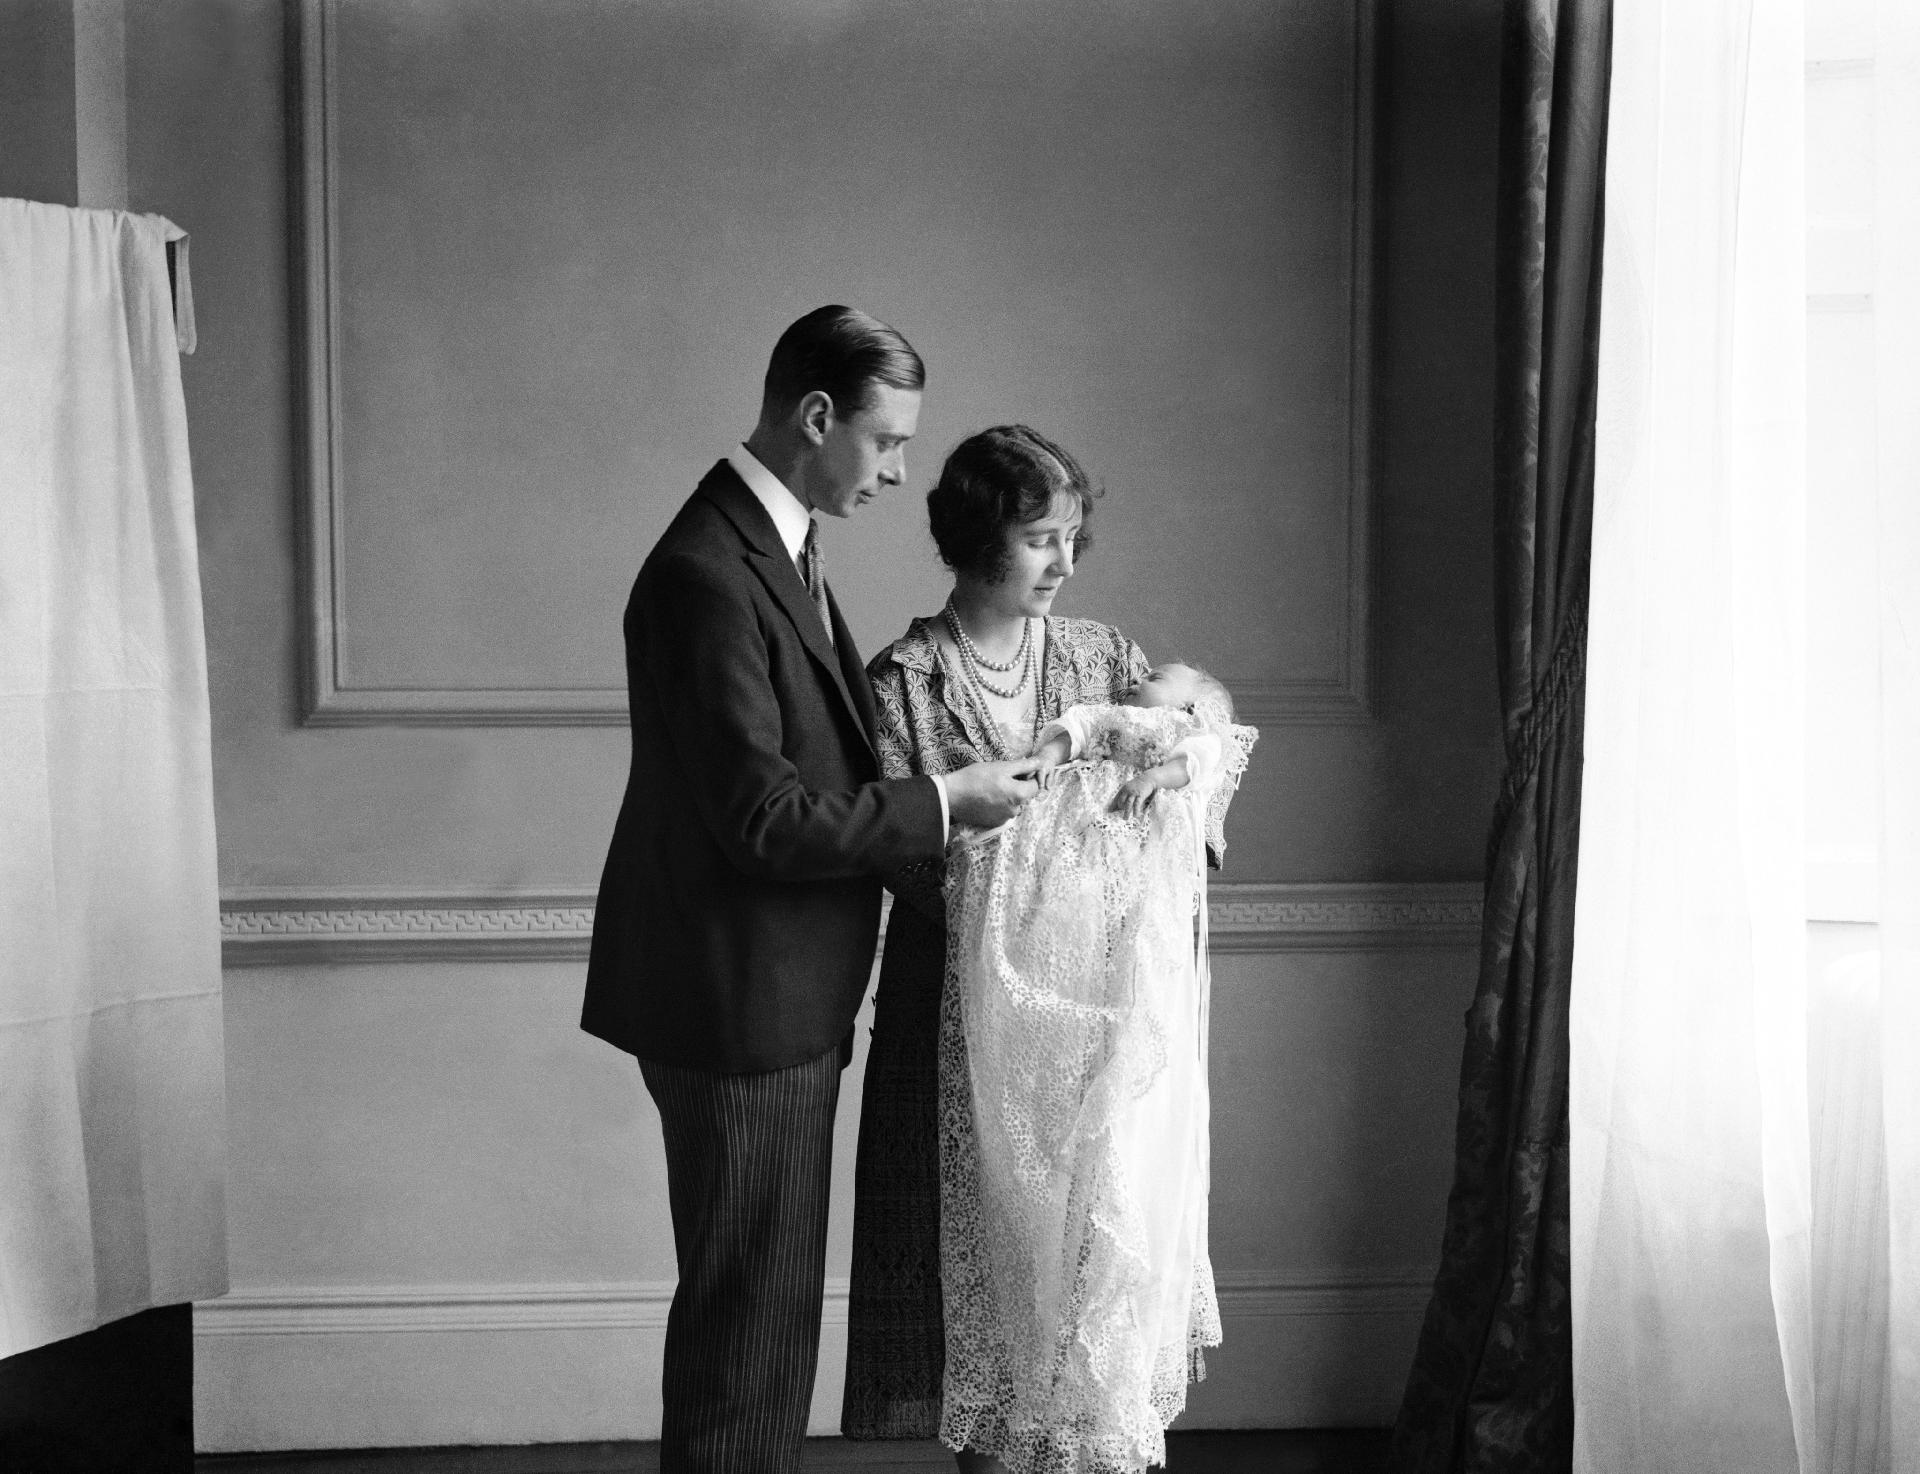 Rainha Elizabeth 2ª no colo de seus pais em imagem de 1926 - PA Images via Getty Images